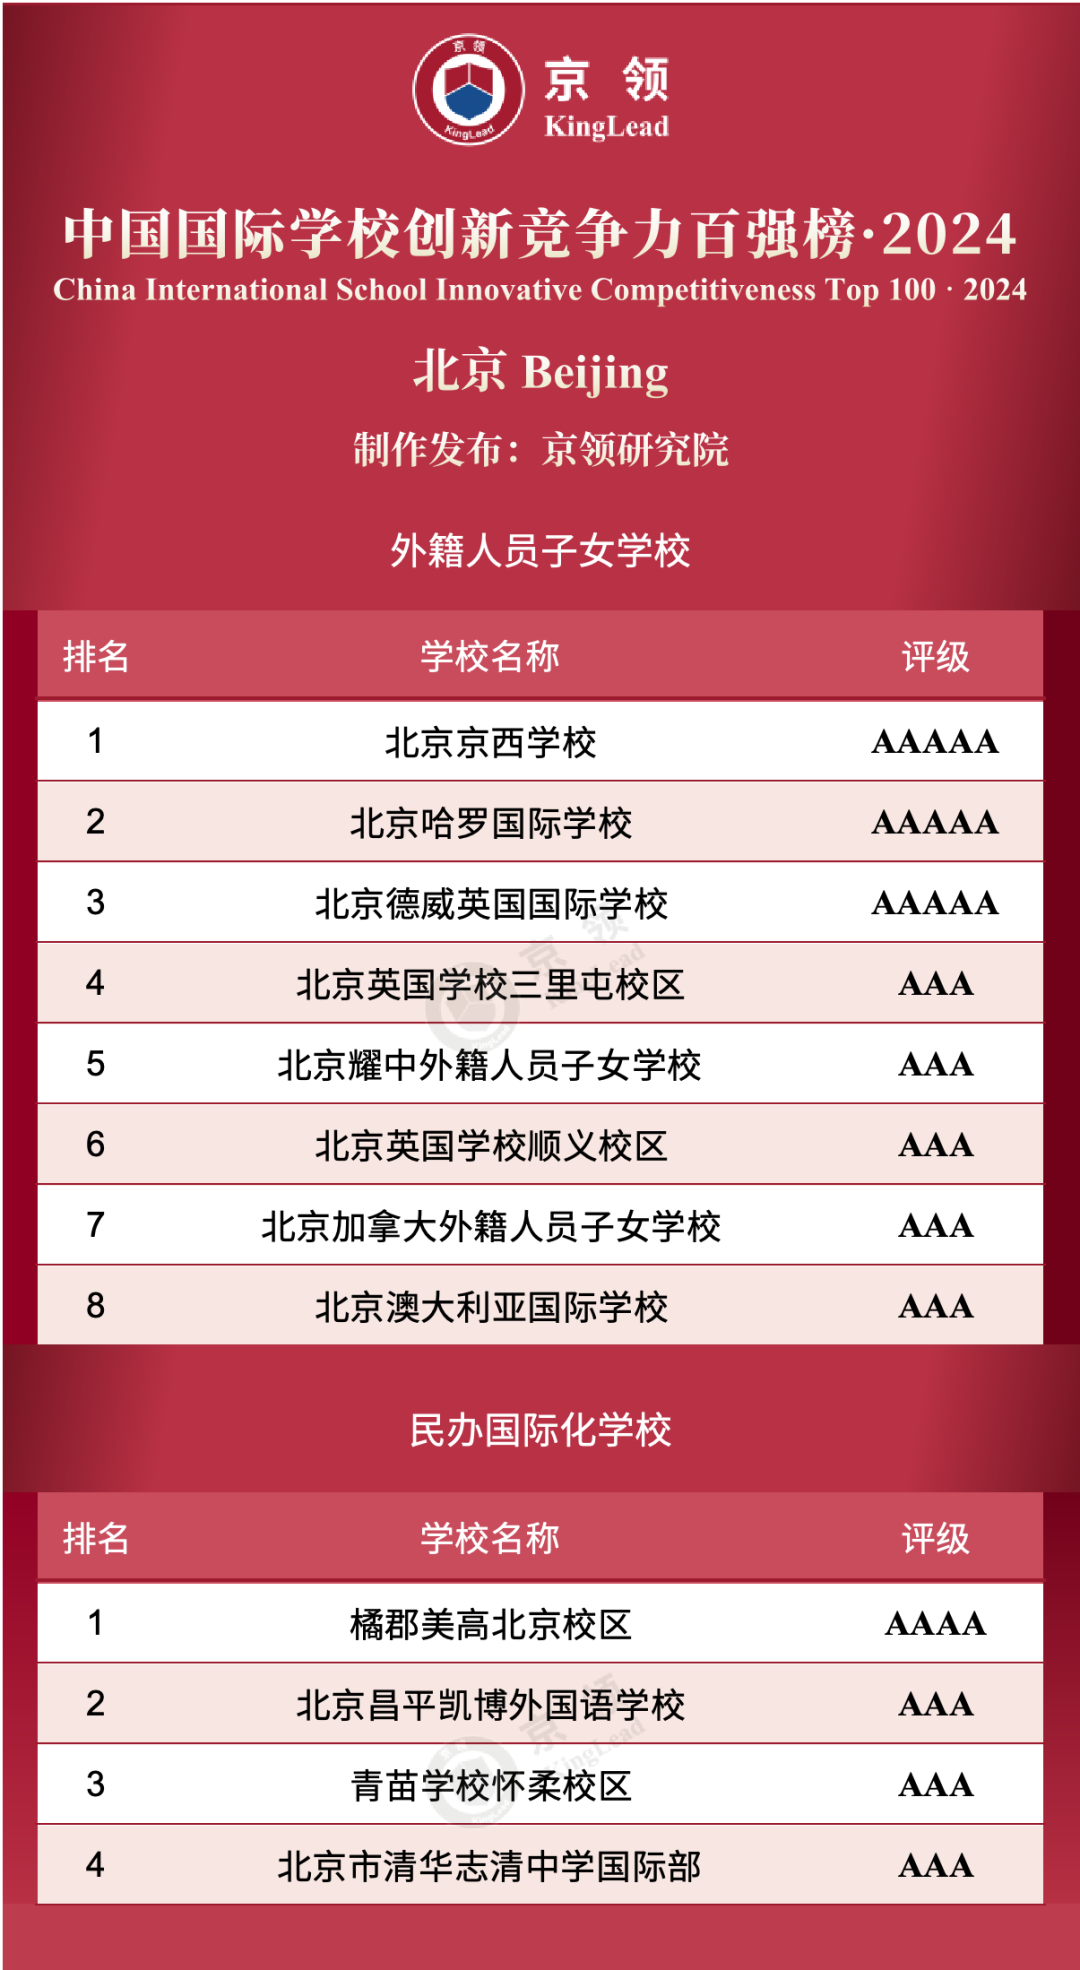 北京共12所国际学校上榜创新榜，其中外籍人员子女学校上榜8所，民办国际化学校上榜4所。